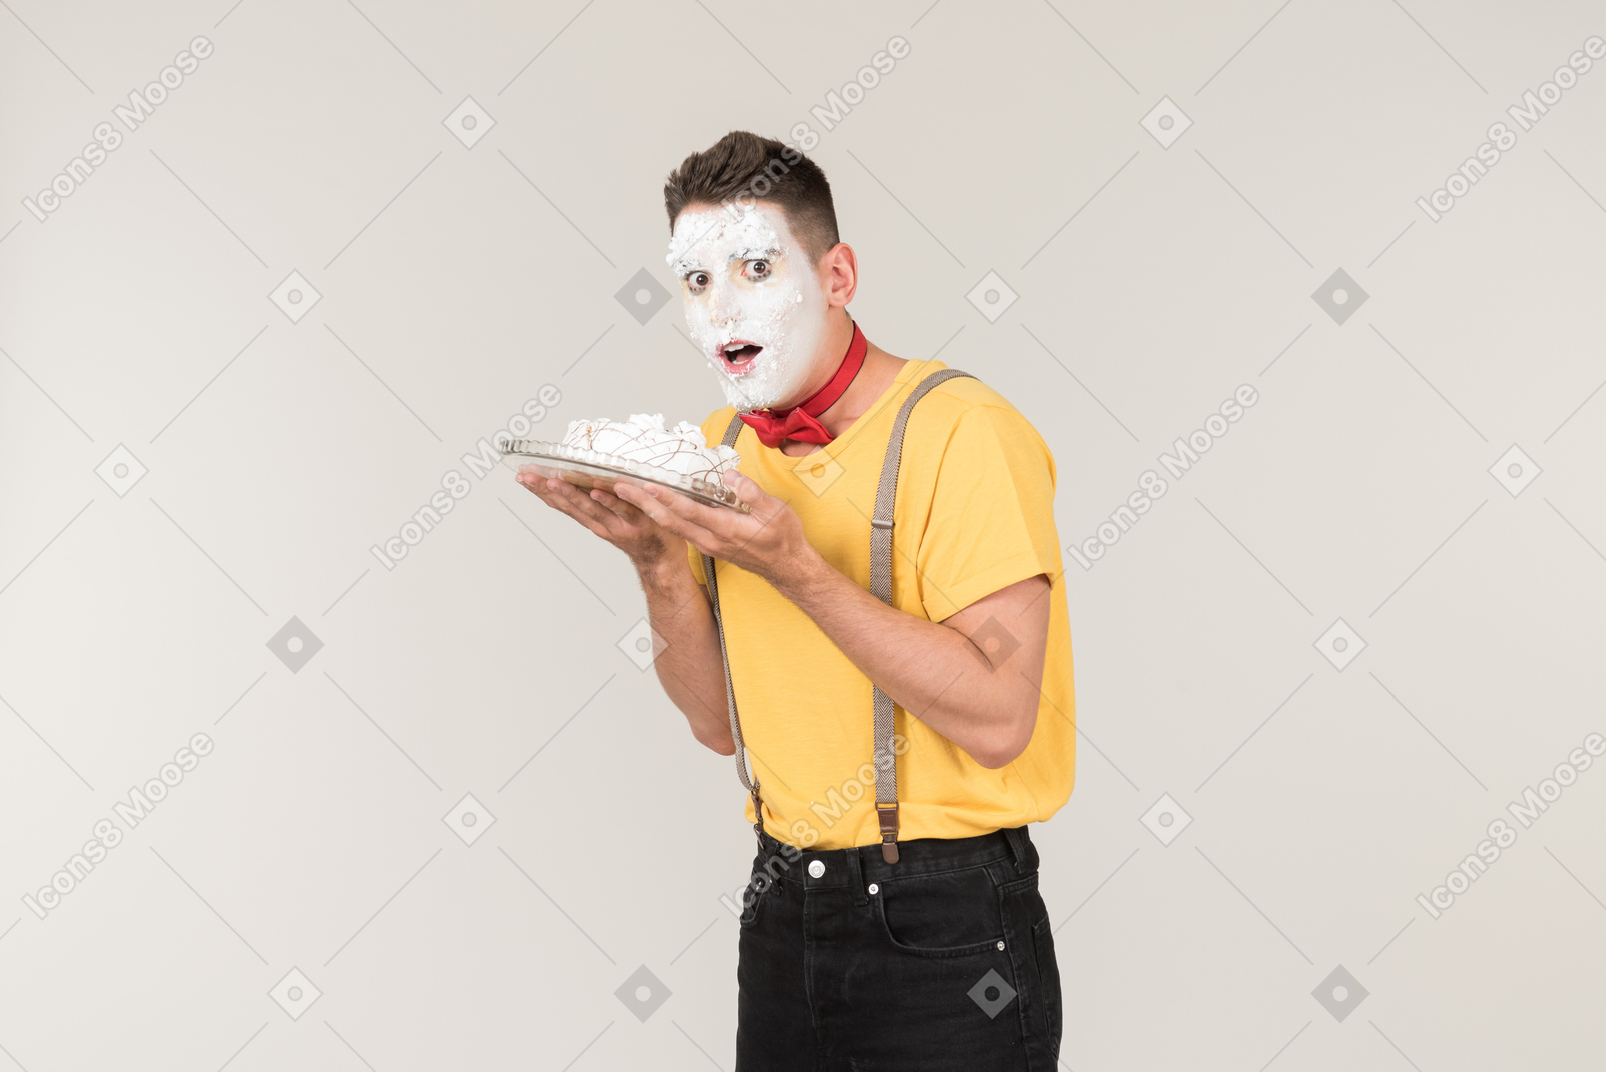 케이크를 들고 그의 얼굴에 케이크 크림과 함께 남성 광대